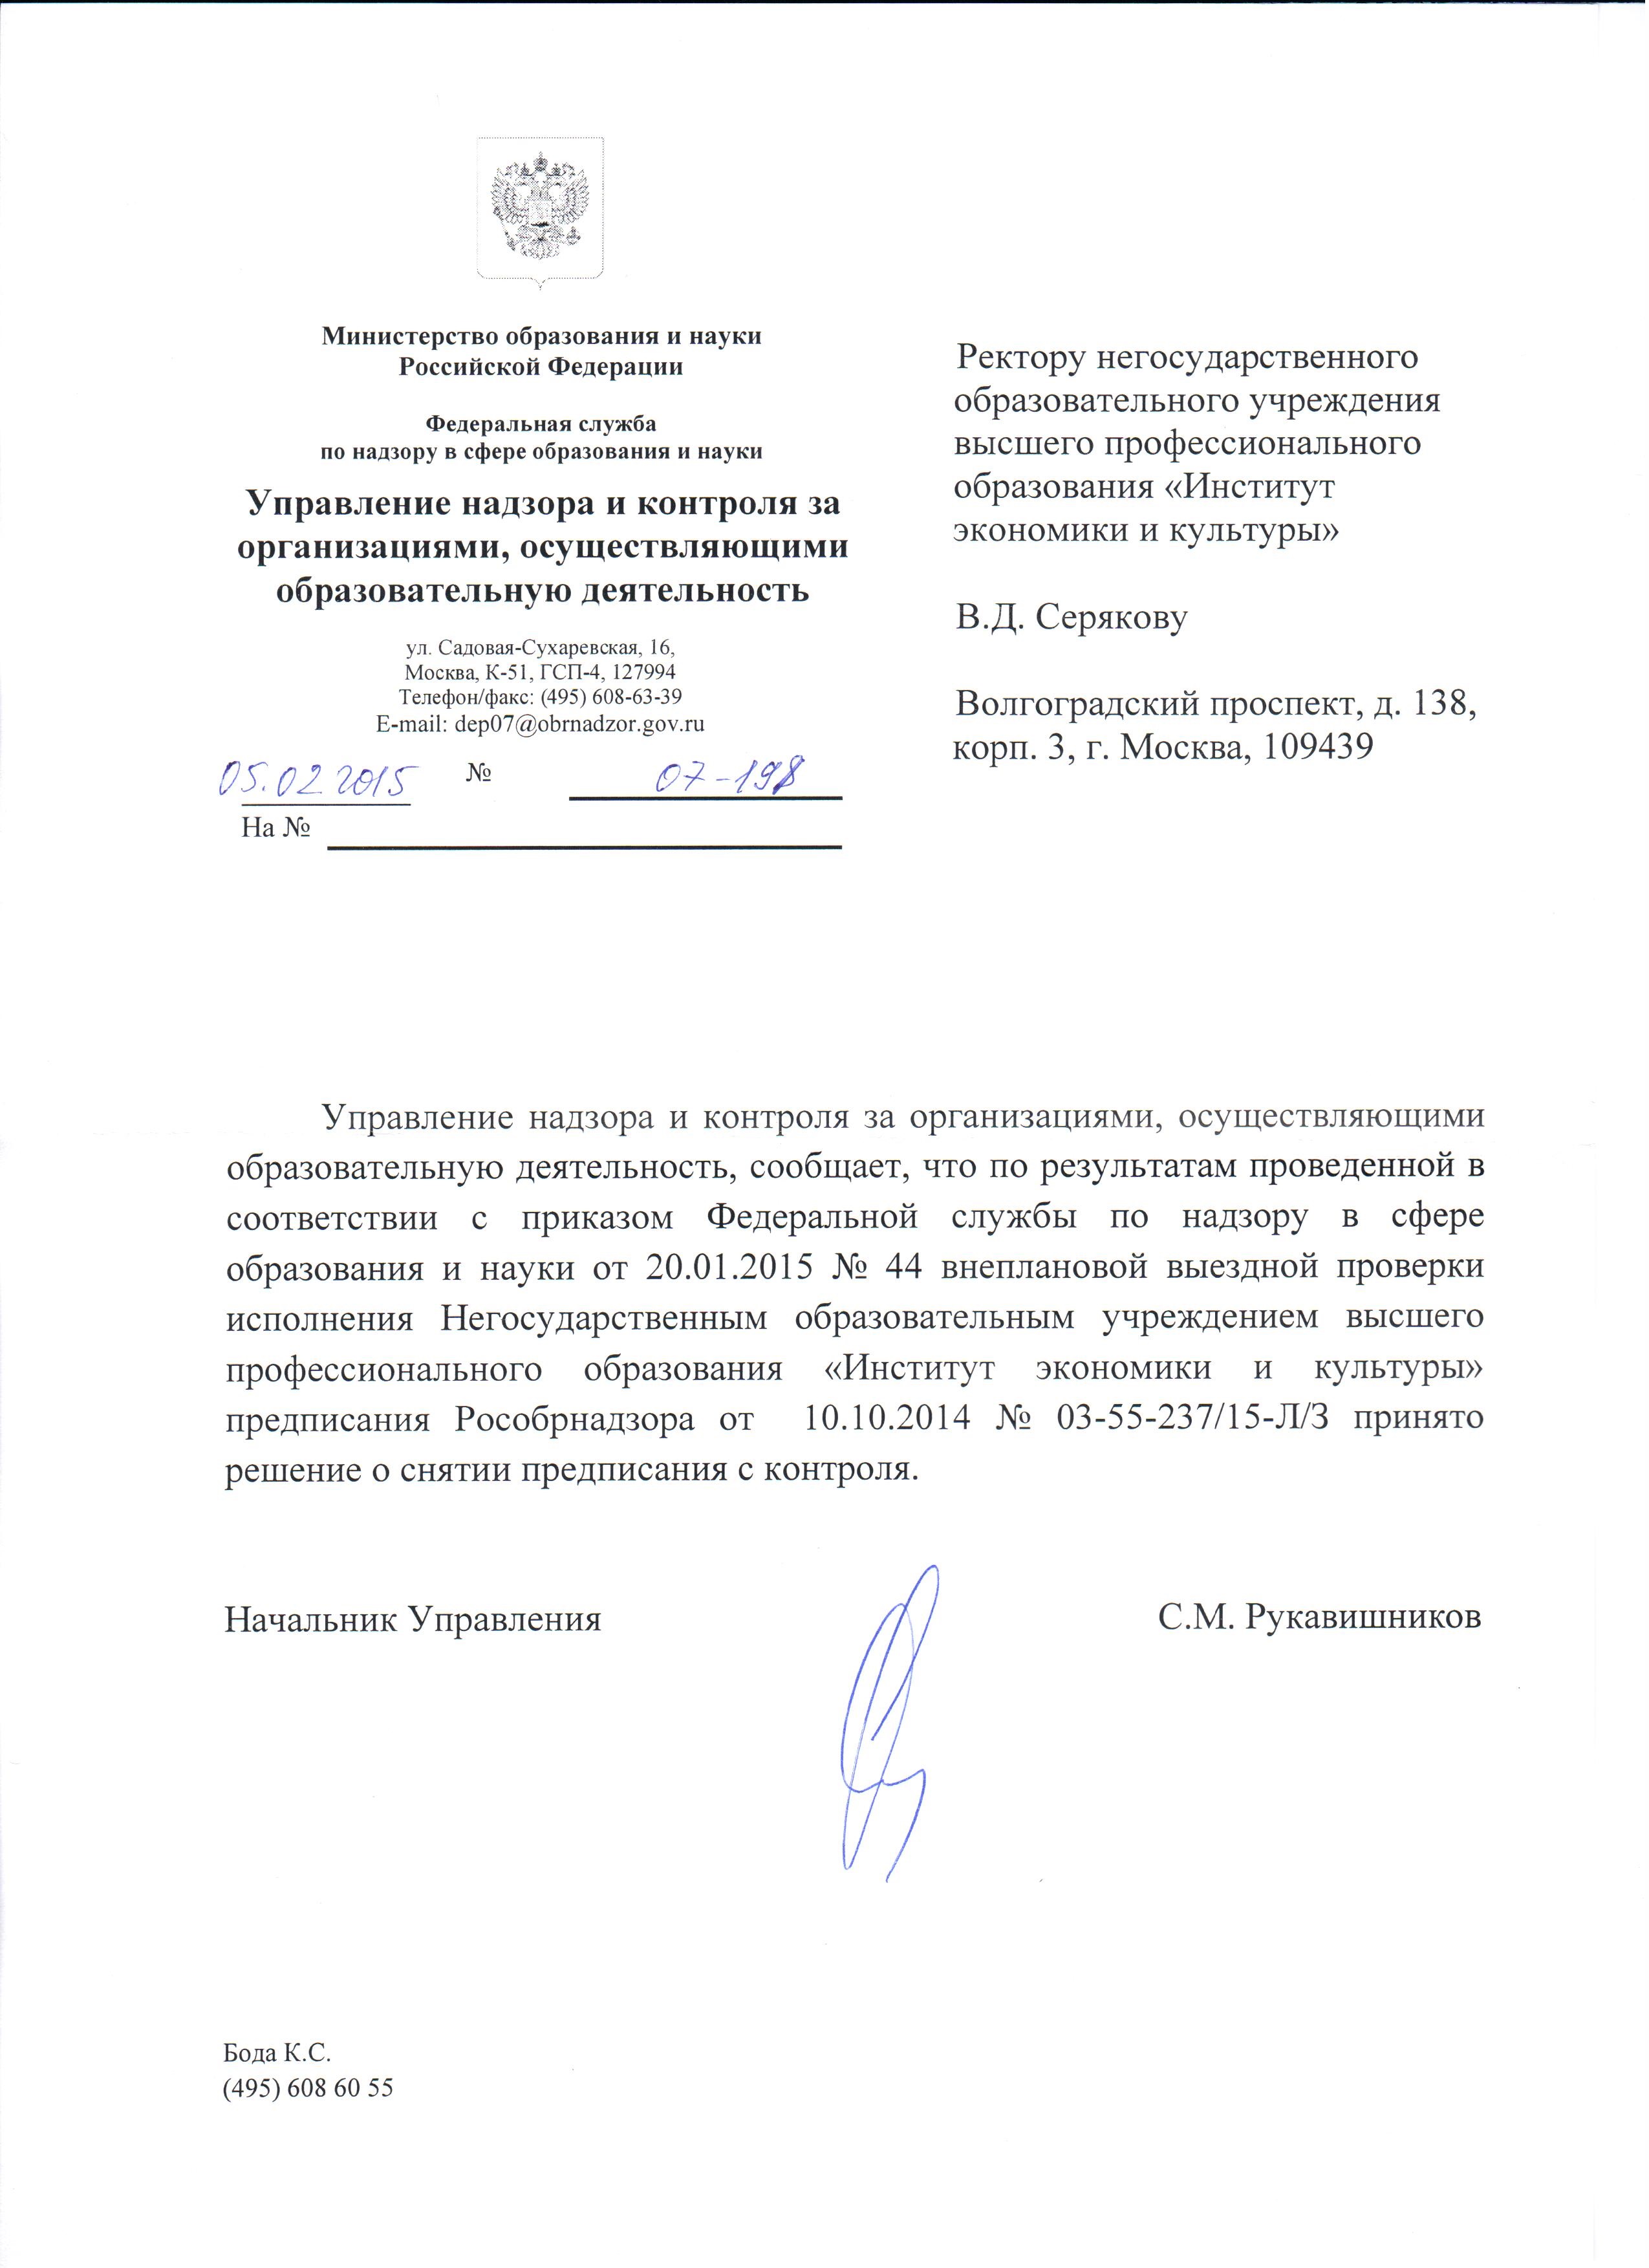 Письмо из Рособрнадзора о снятии предписания с контроля